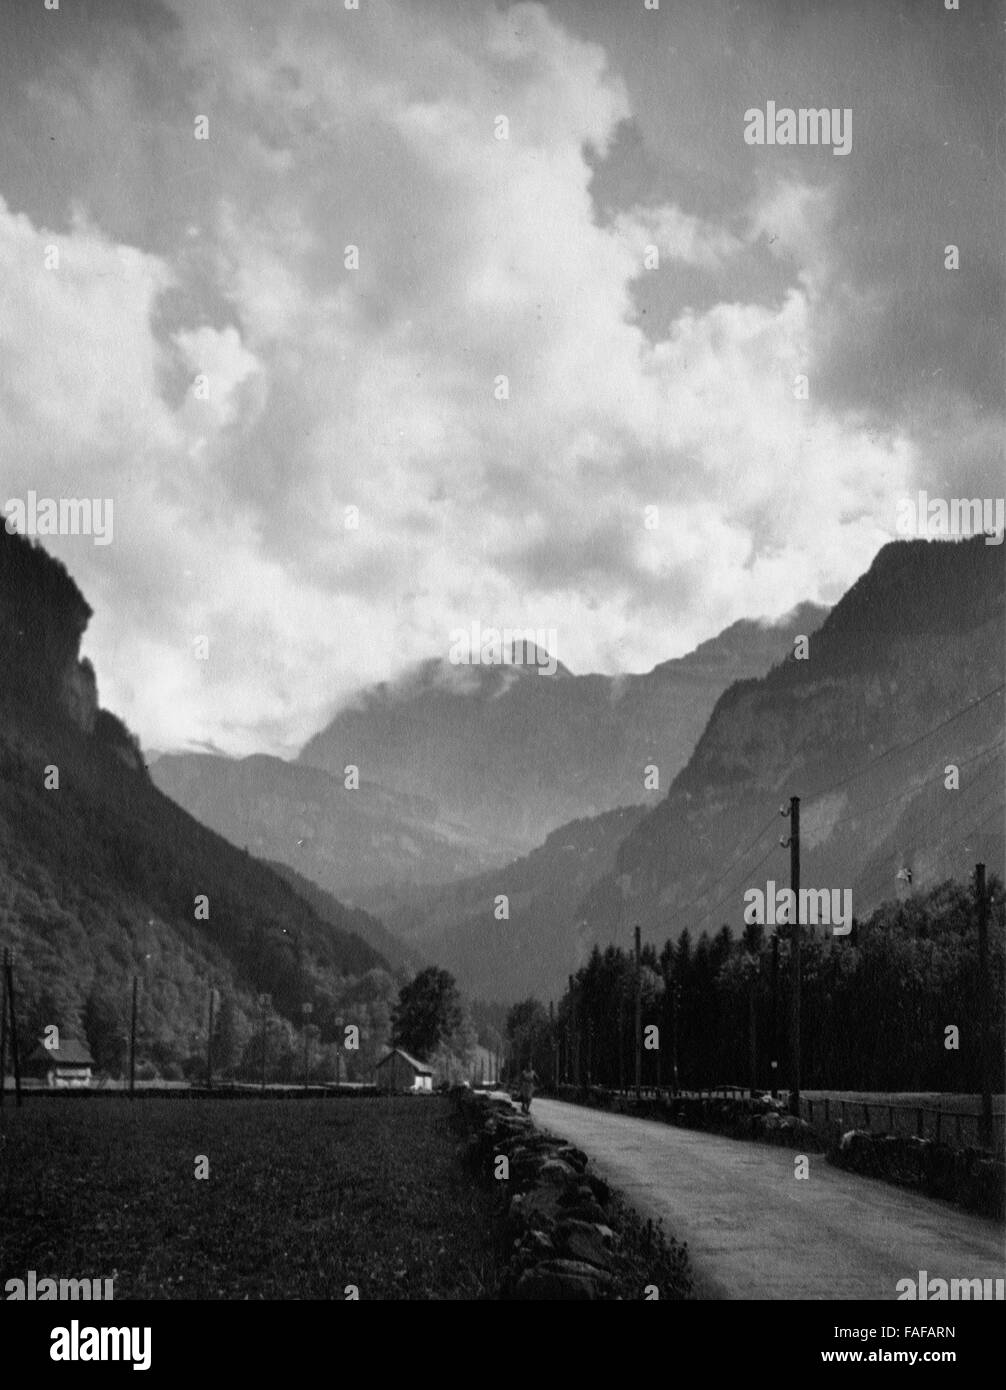 Auf dem Weg nach Engelberg im Kanton Obwalden, Schweiz 1930er Jahre. On the road to Engelberg in Obwalden canton, Switzerland 1930s. Stock Photo